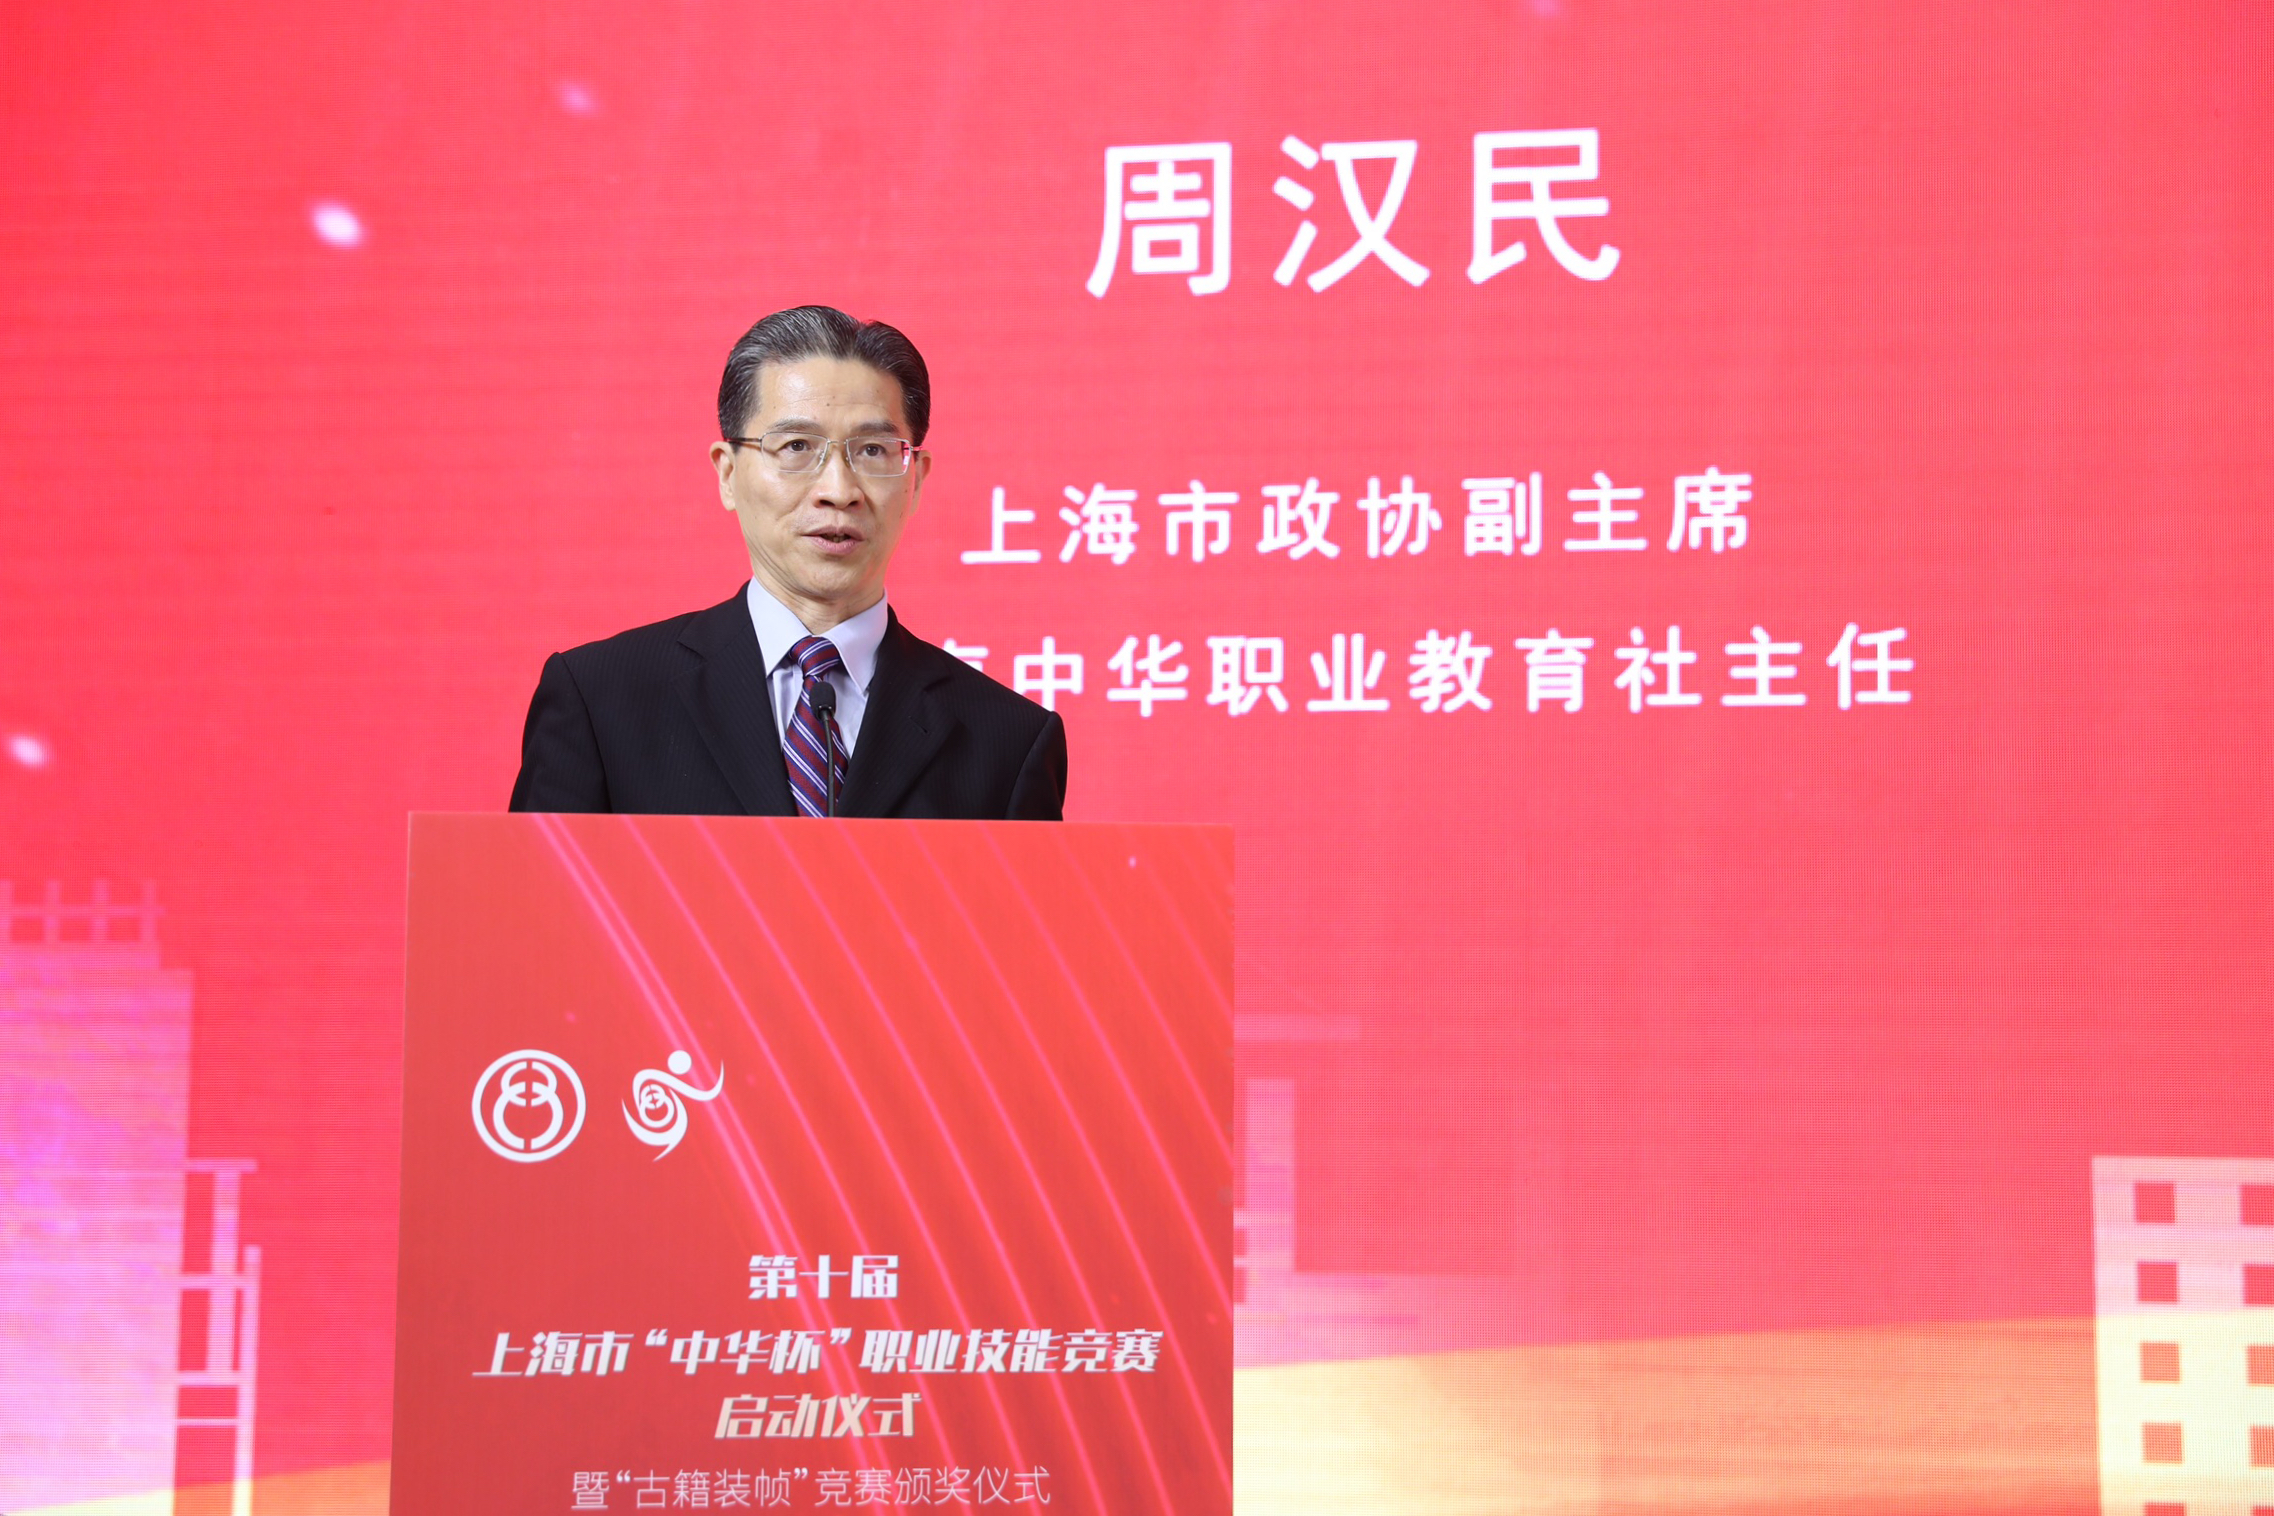 上海市政协副主席周汉民教授发表主旨演讲